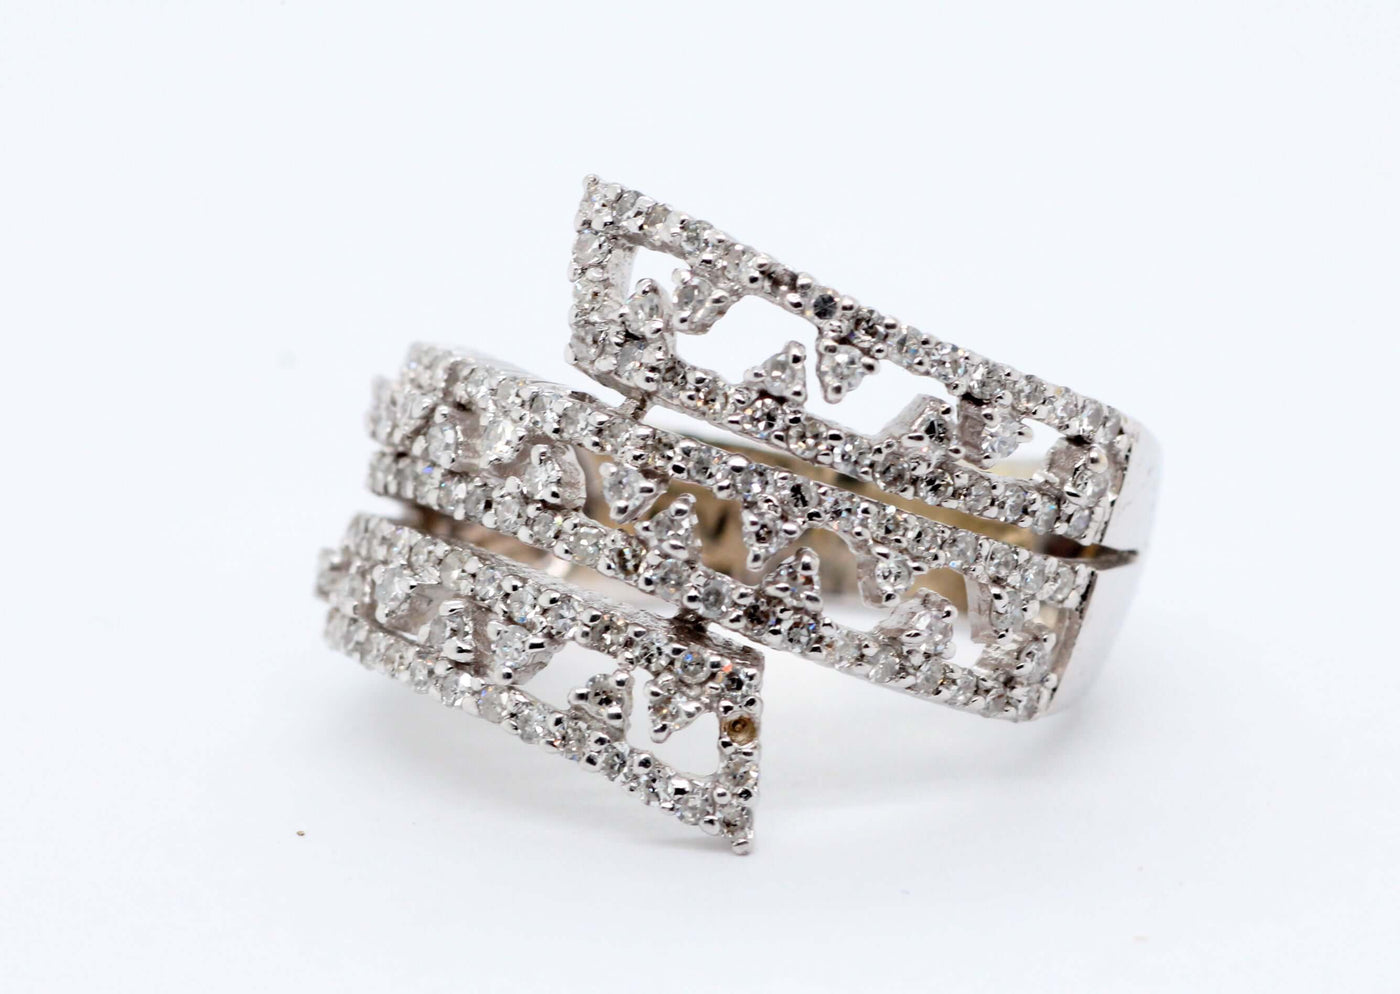 14Kw 1.01 CTTW Diamond Fashion Ring, HI-I1 image